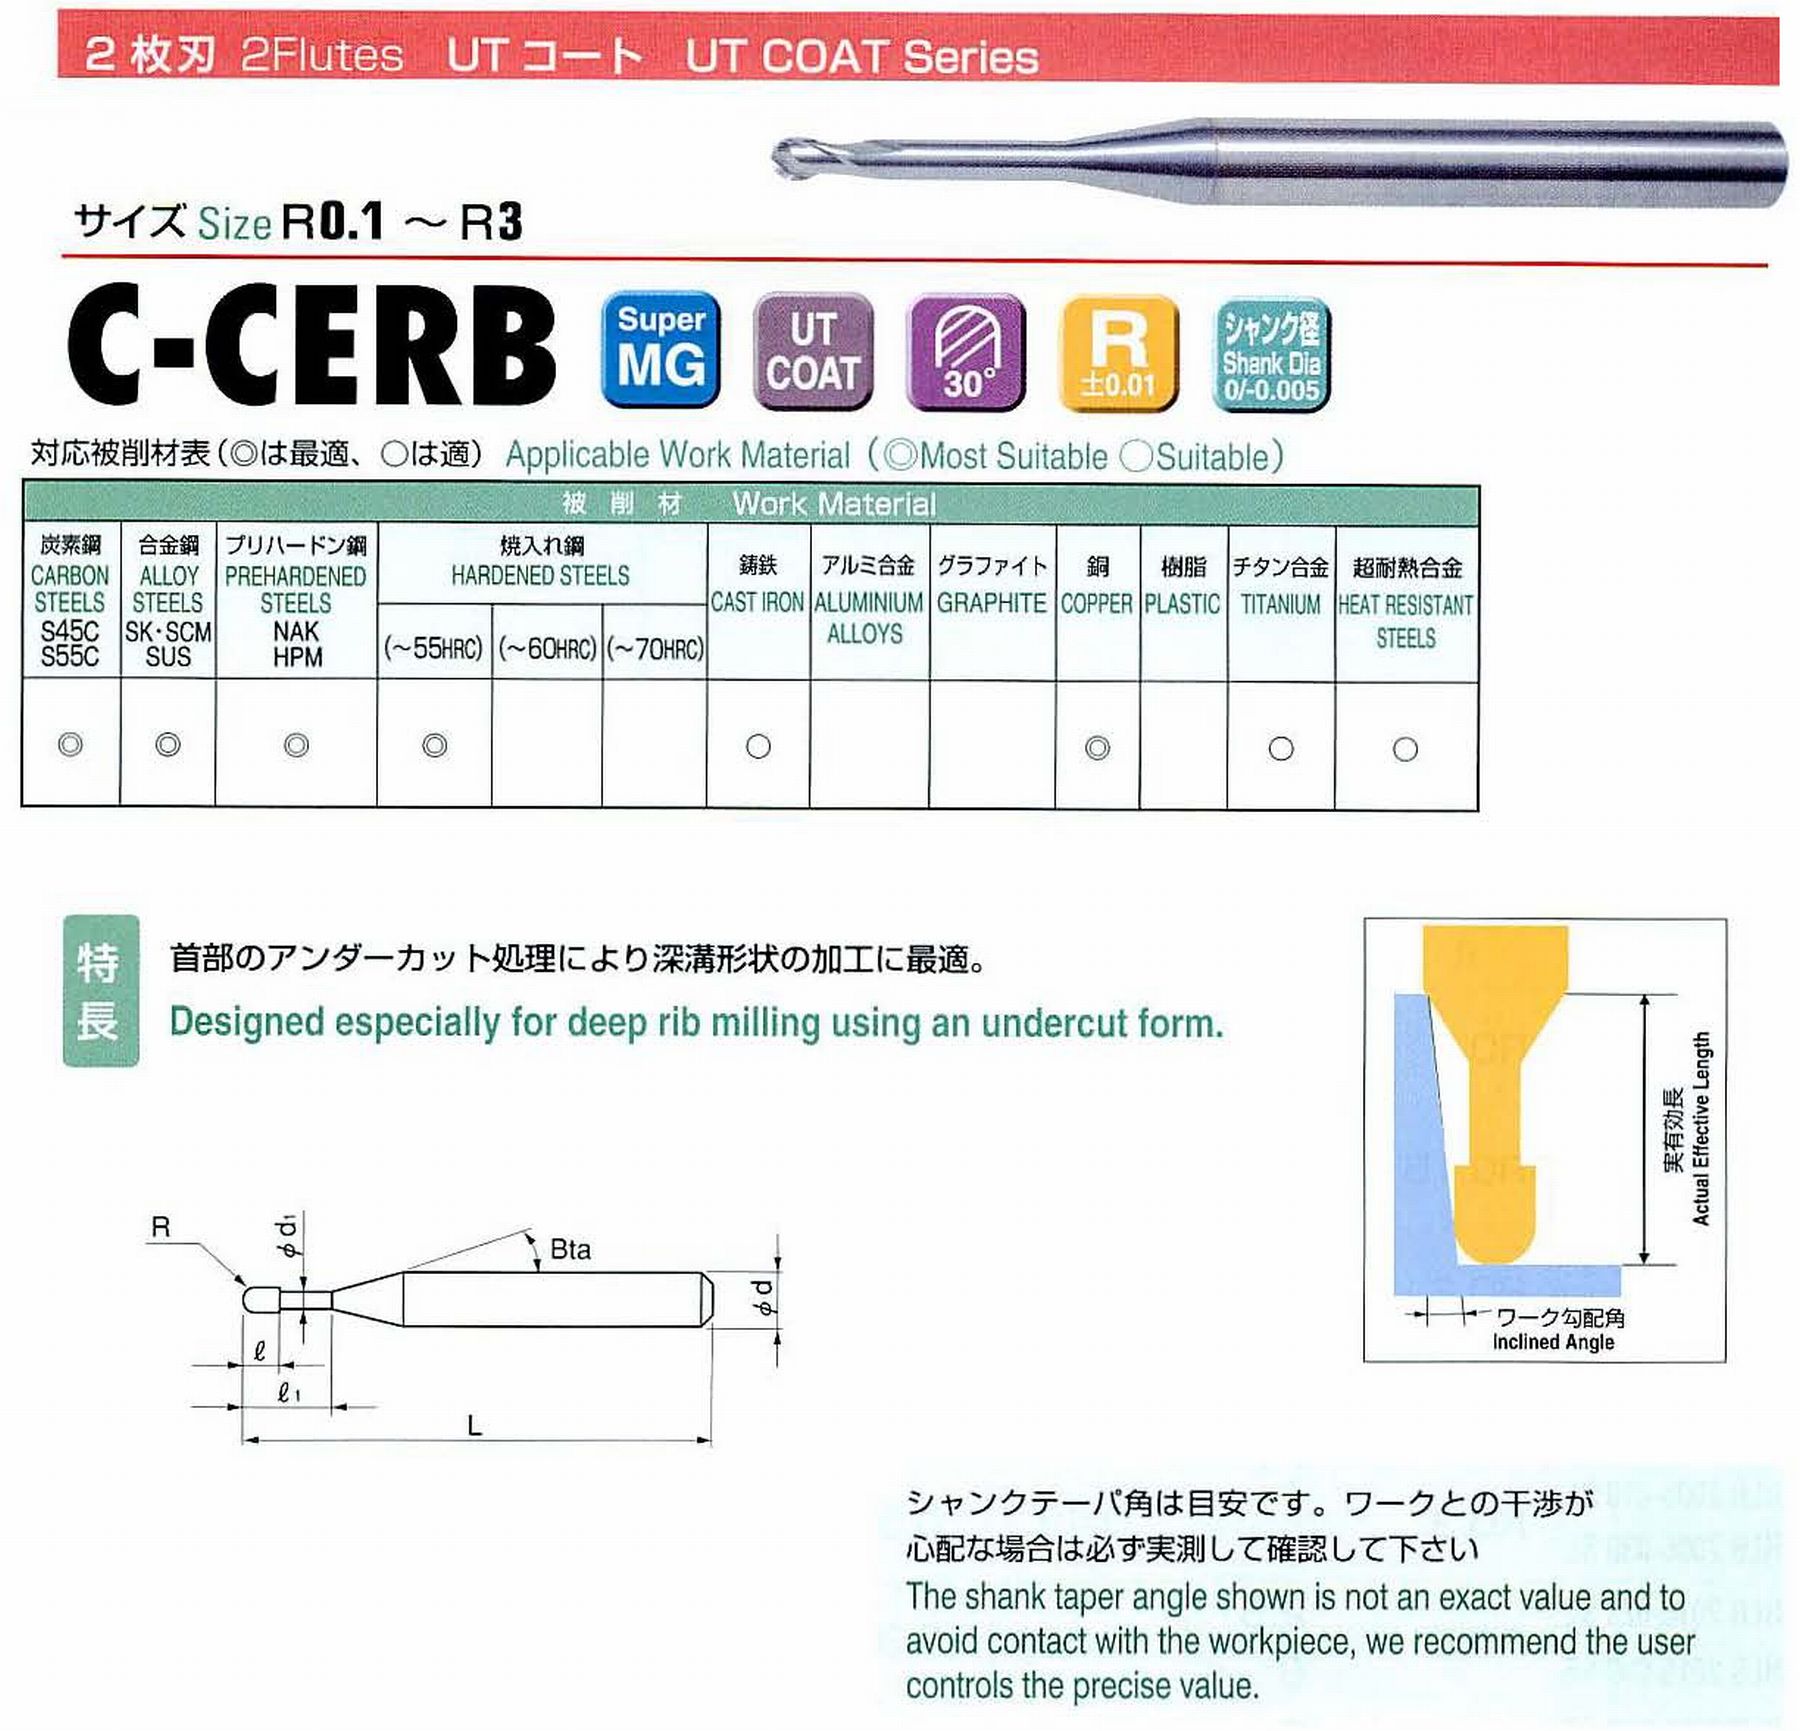 ユニオンツール 2枚刃 C-CERB2002-0.3 ボール半径R0.1 有効長0.3 刃長0.16 首径0.17 シャンクテーパ角16° 全長45 シャンク径4